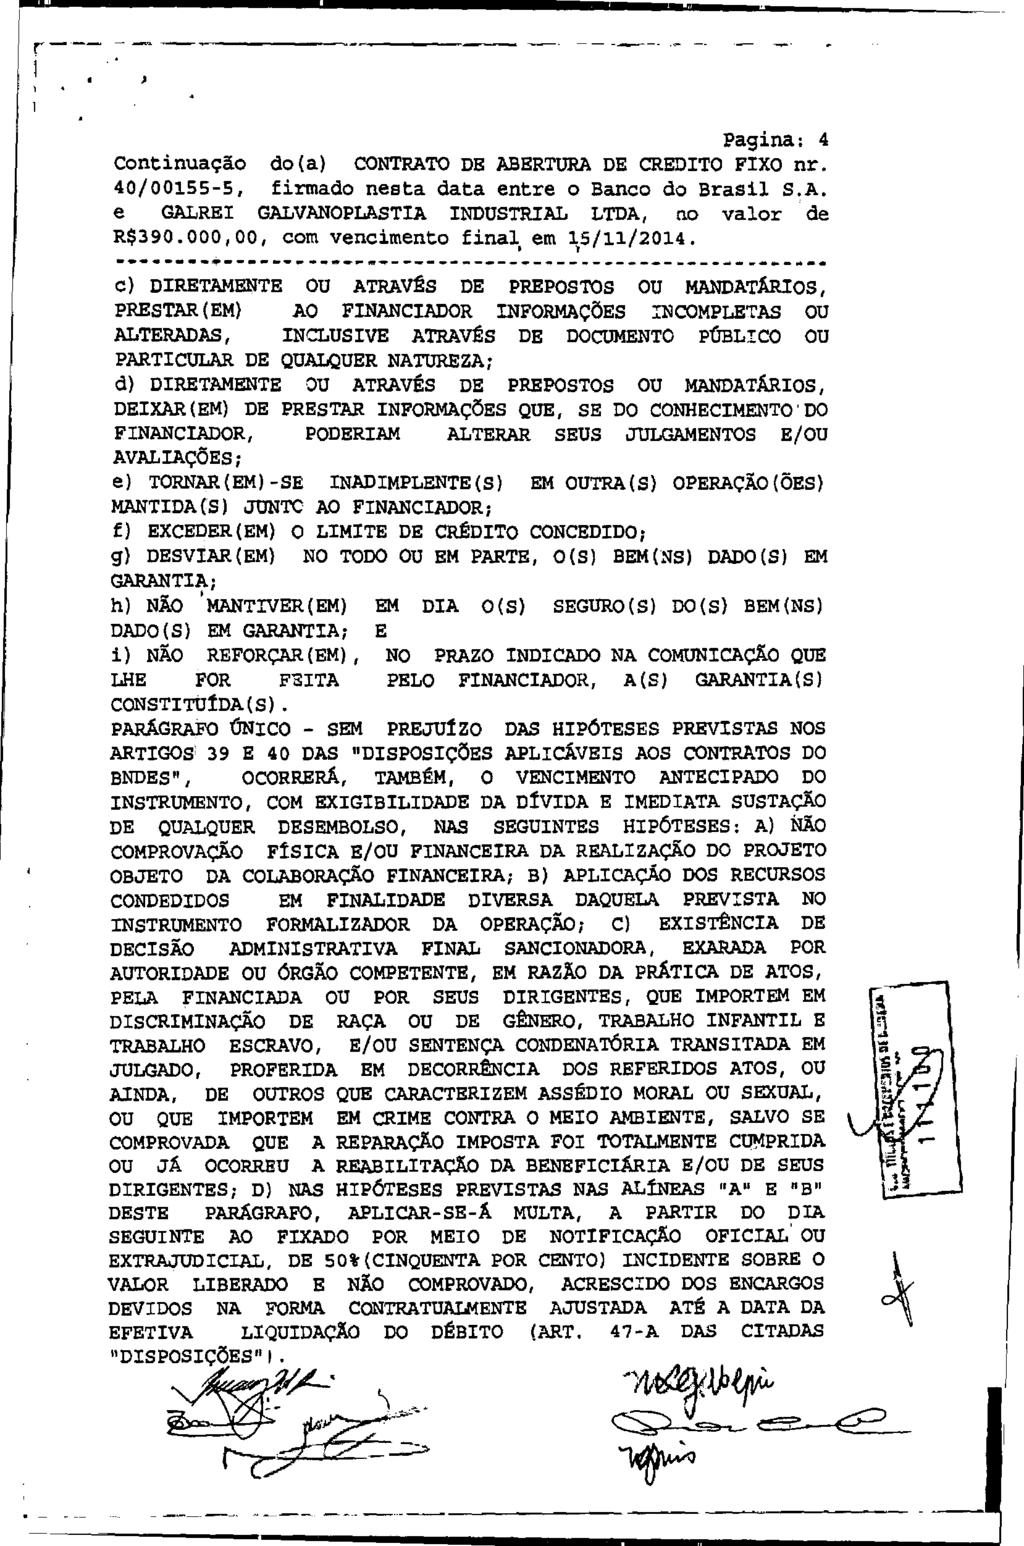 fls. 13 Este documento é cópia do original, assinado digitalmente por EDUARDO JANZON AVALLONE NOGUEIRA e Tribunal de Justica de Sao Paulo, protocolado em 16/07/2015 às 09:43, sob o número